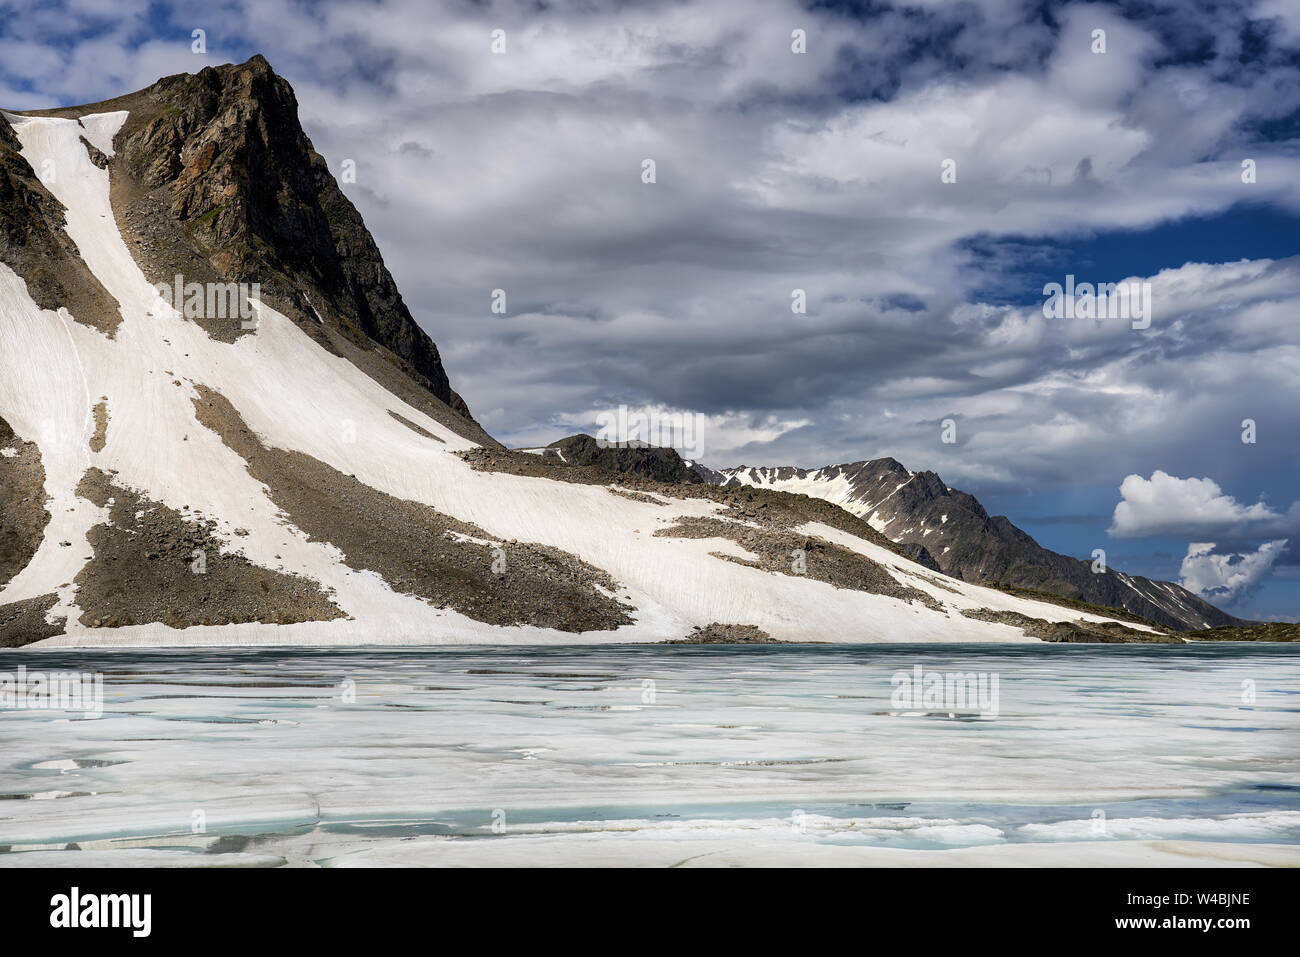 Glacier sur les montagnes et le lac de glace flottante en surface. Sayan de l'Est. La République de Touva. L'Asie centrale Banque D'Images